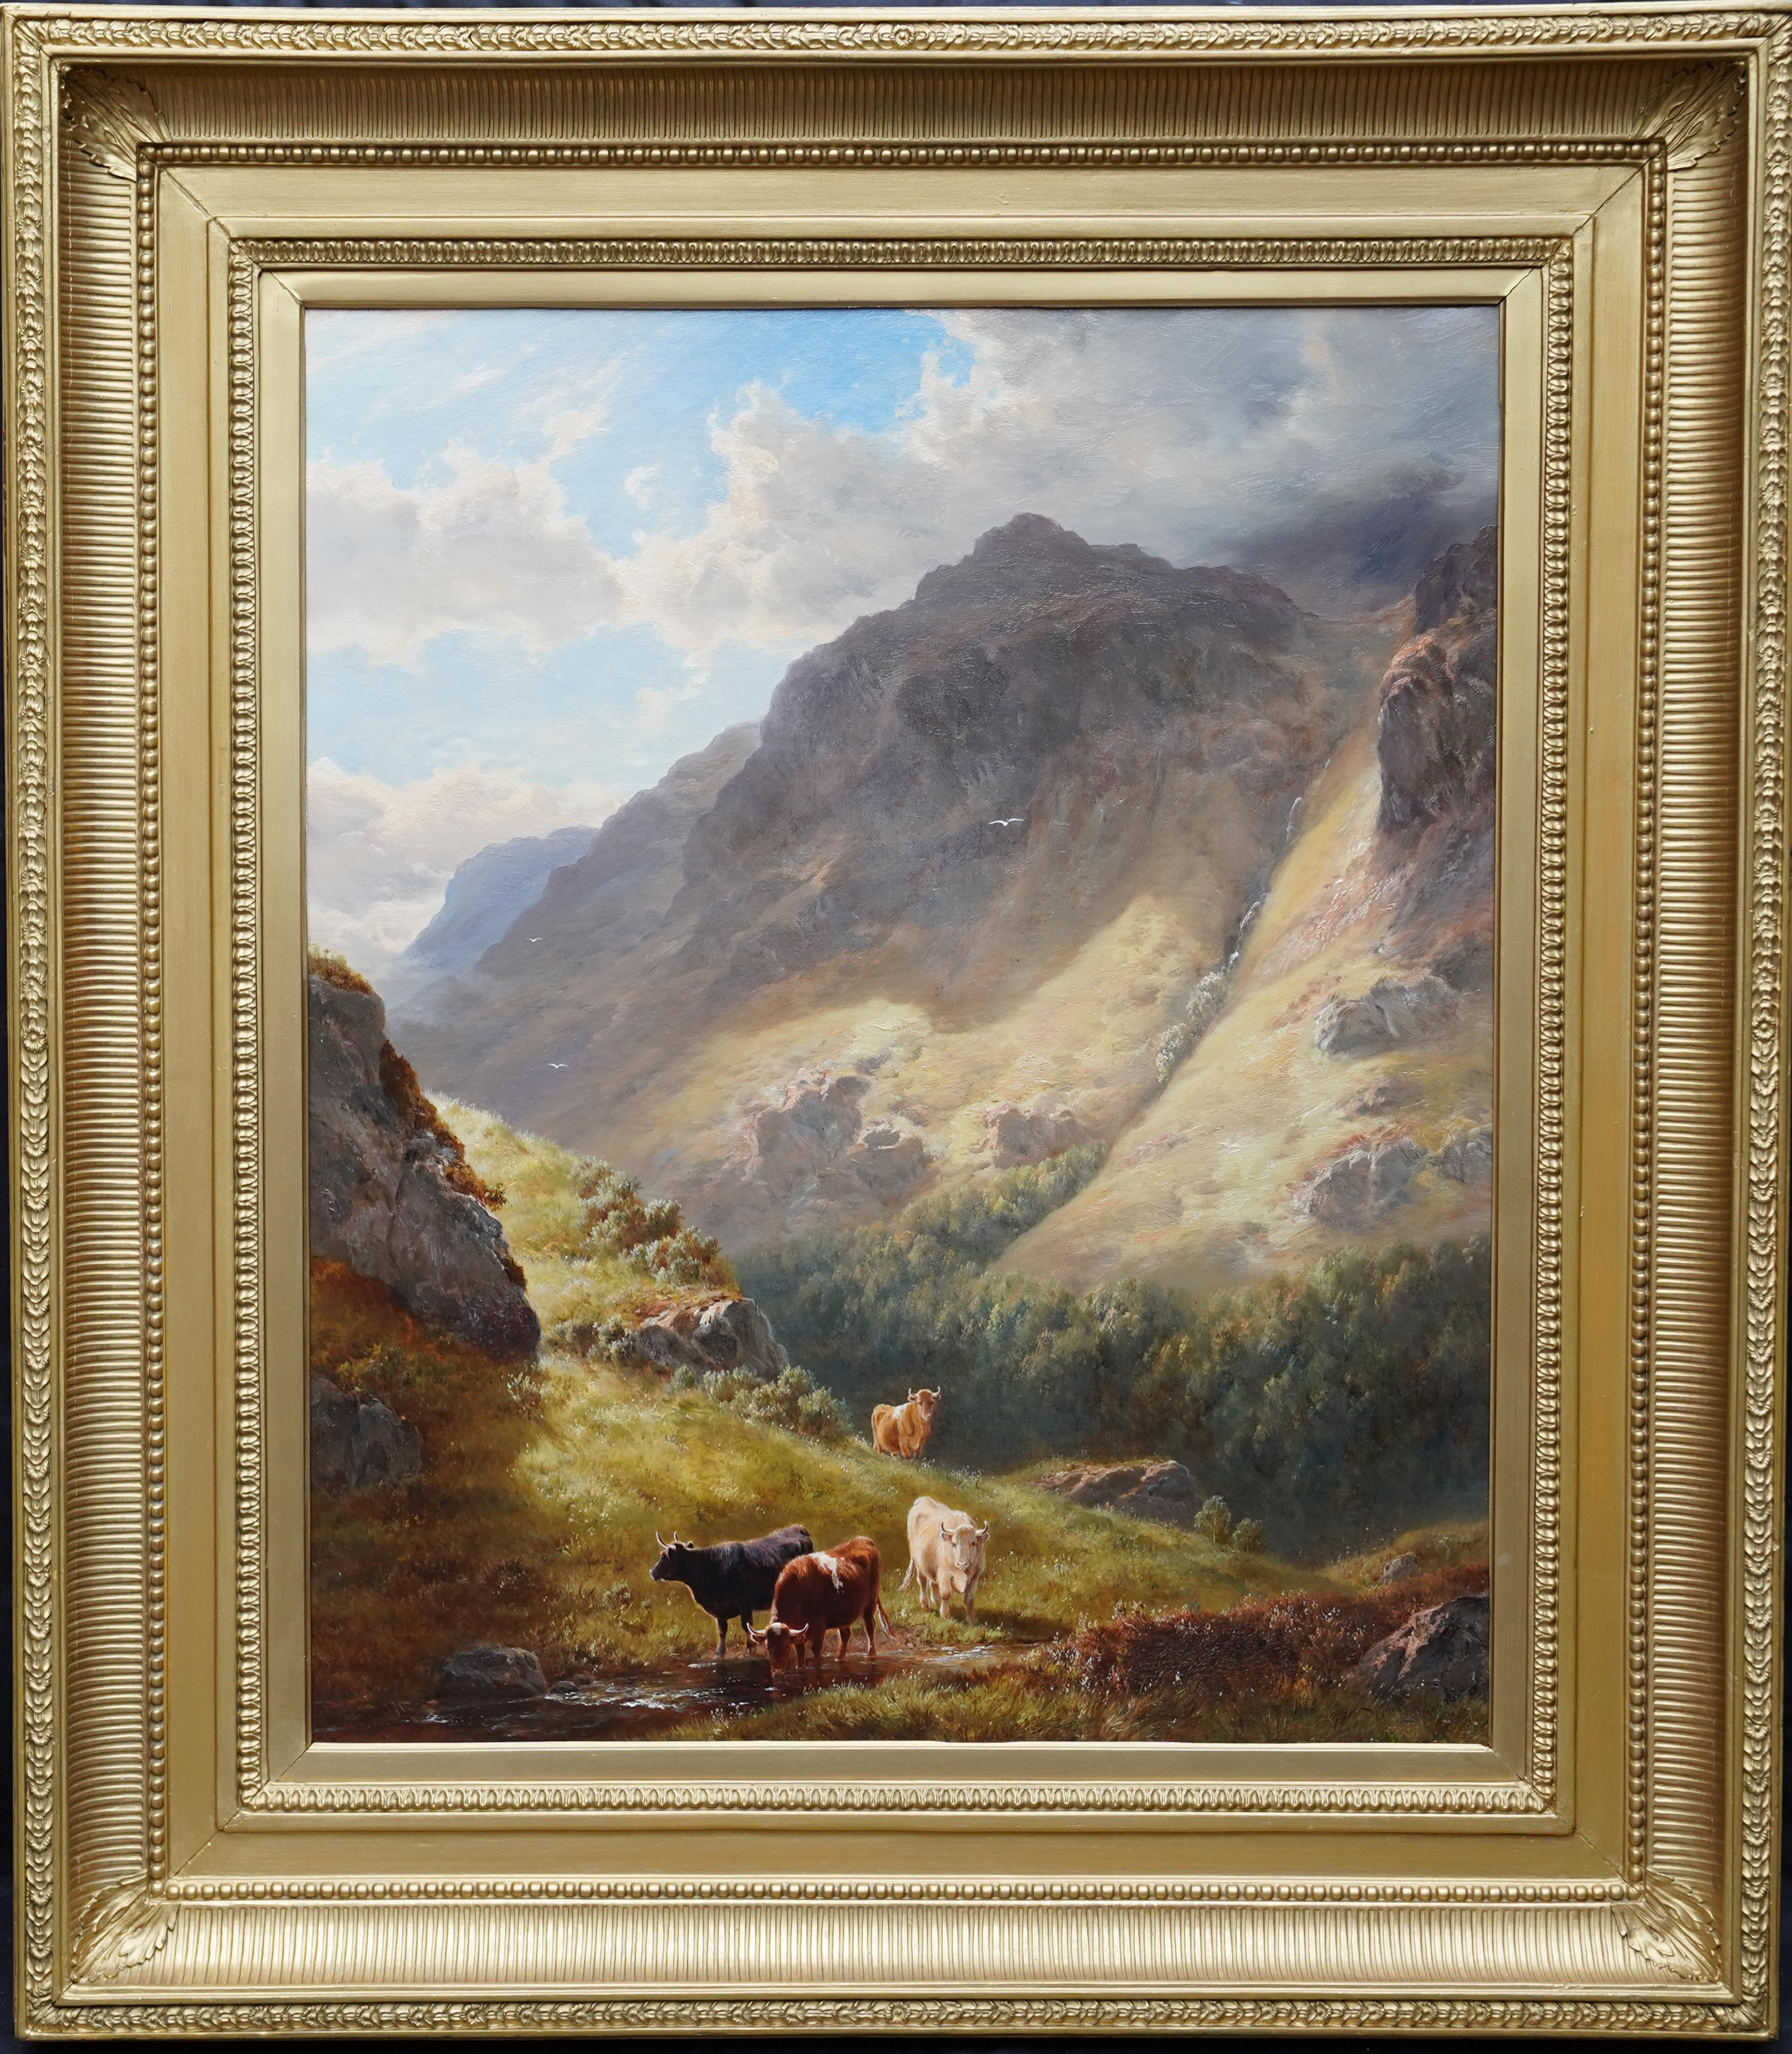 Animal Painting William Davies - Paysage de Gate Crag Borrowdale - Peinture à l'huile britannique du 19e siècle du Lake District